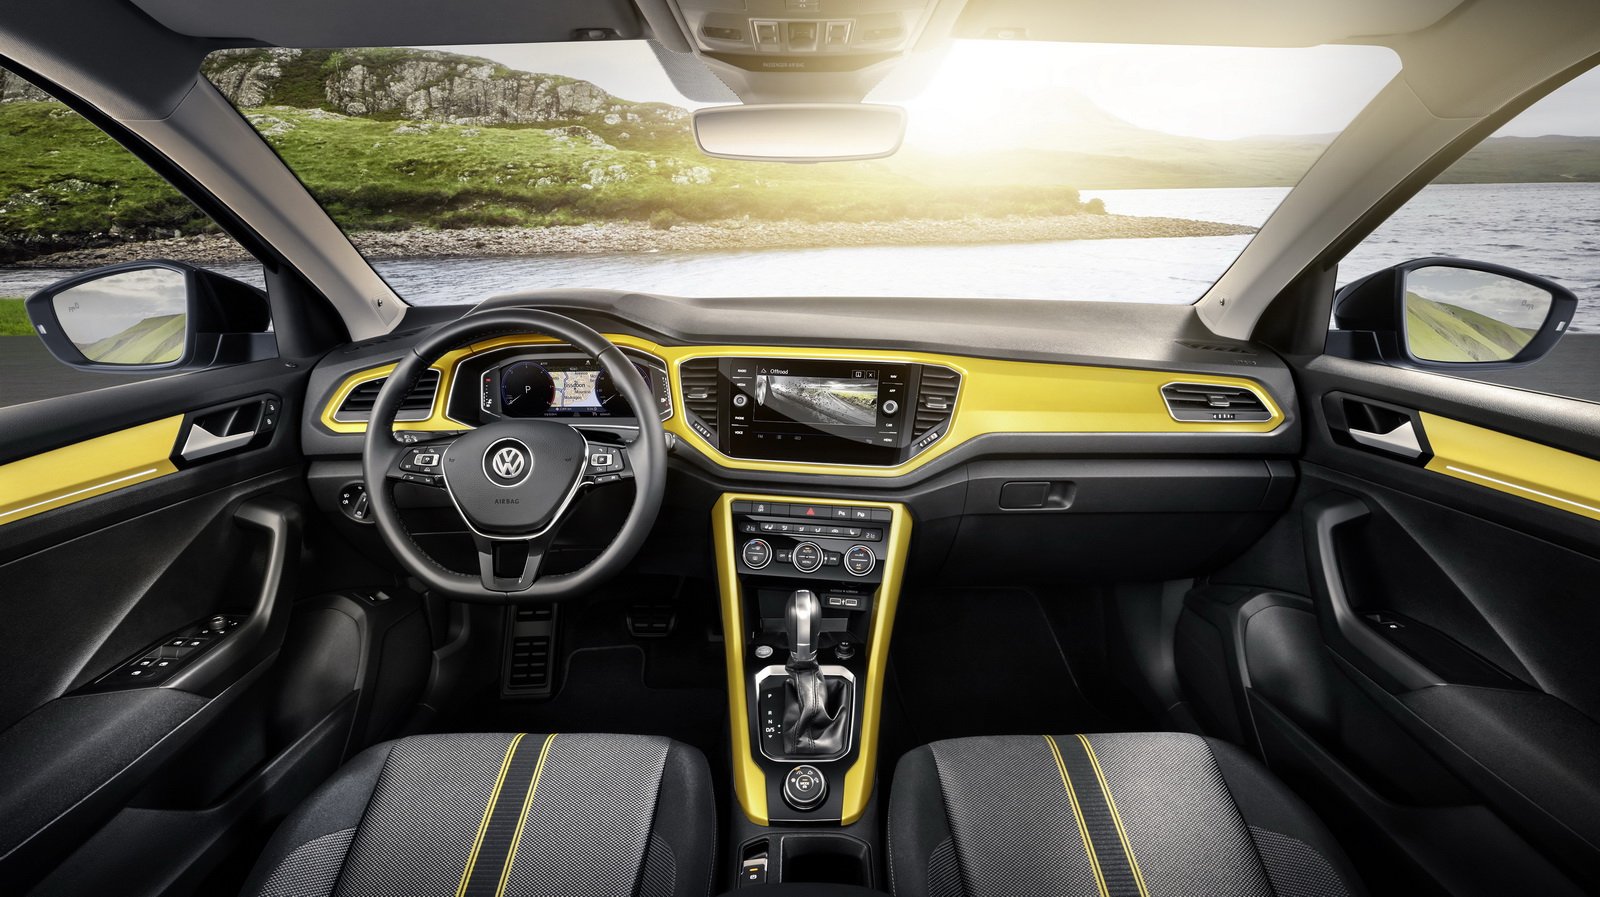 Volkswagen T-Roc получи нов базов дизелов двигател